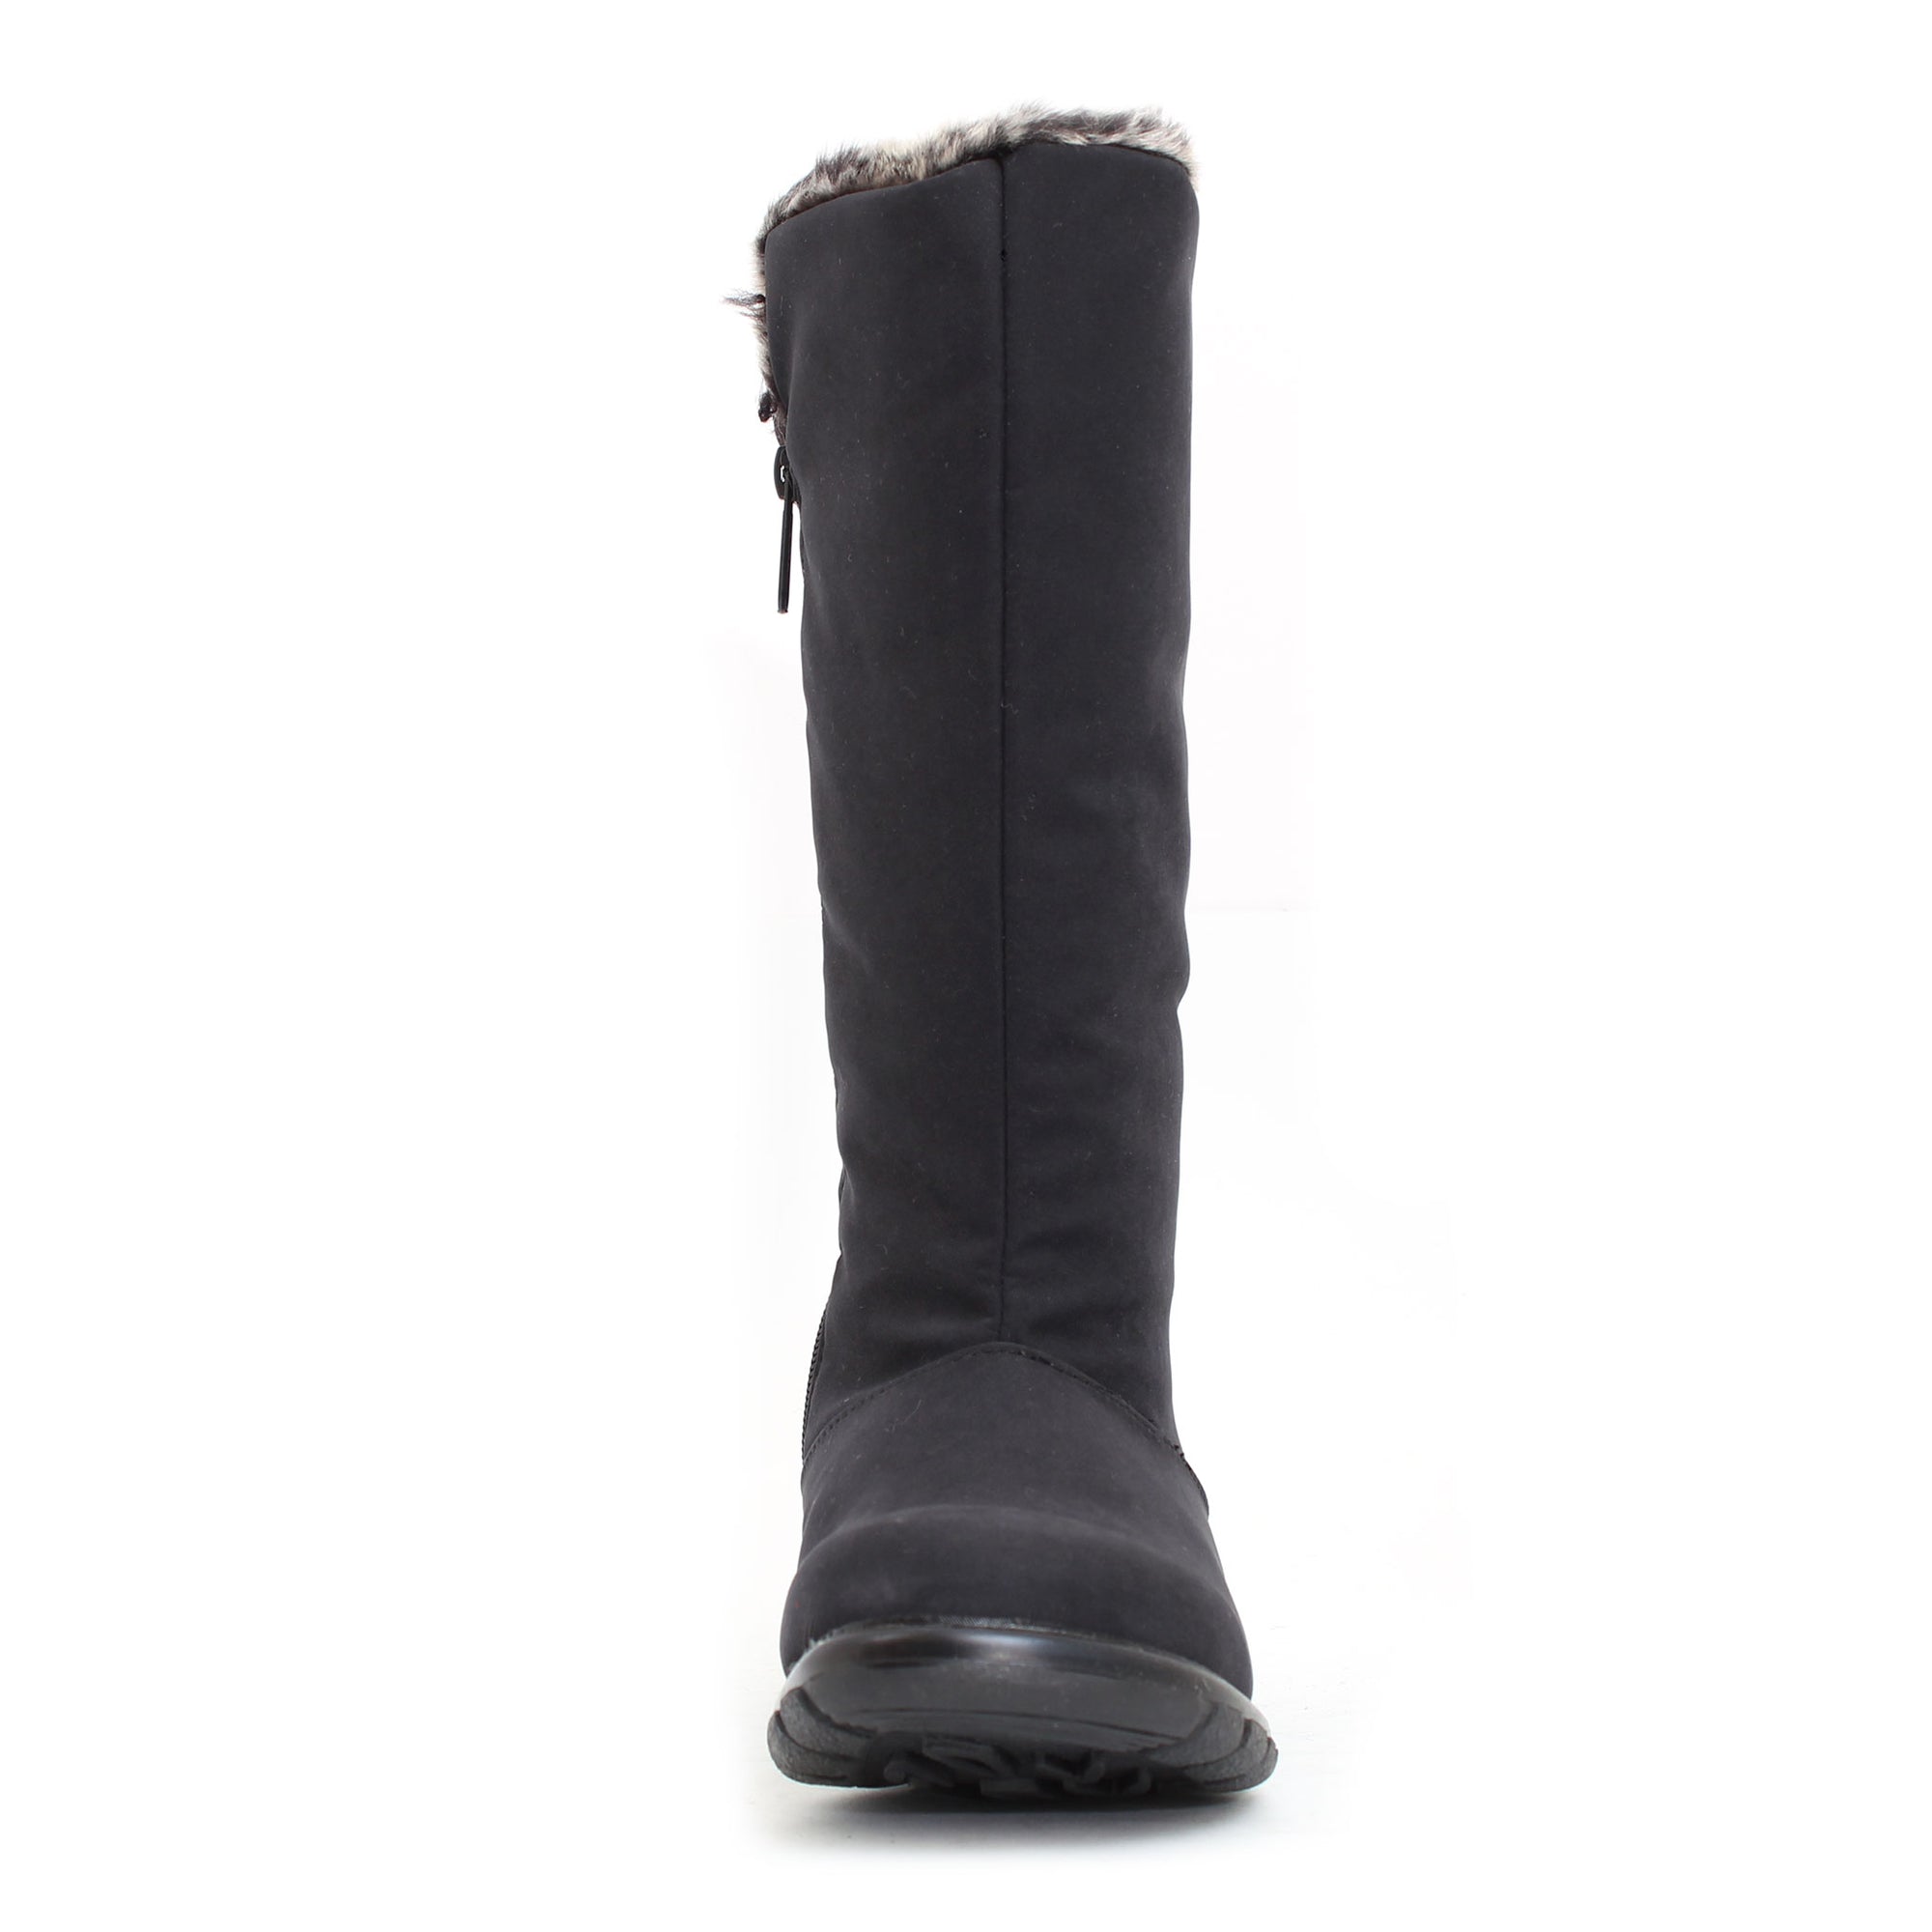 Janet winter boot for women - Black